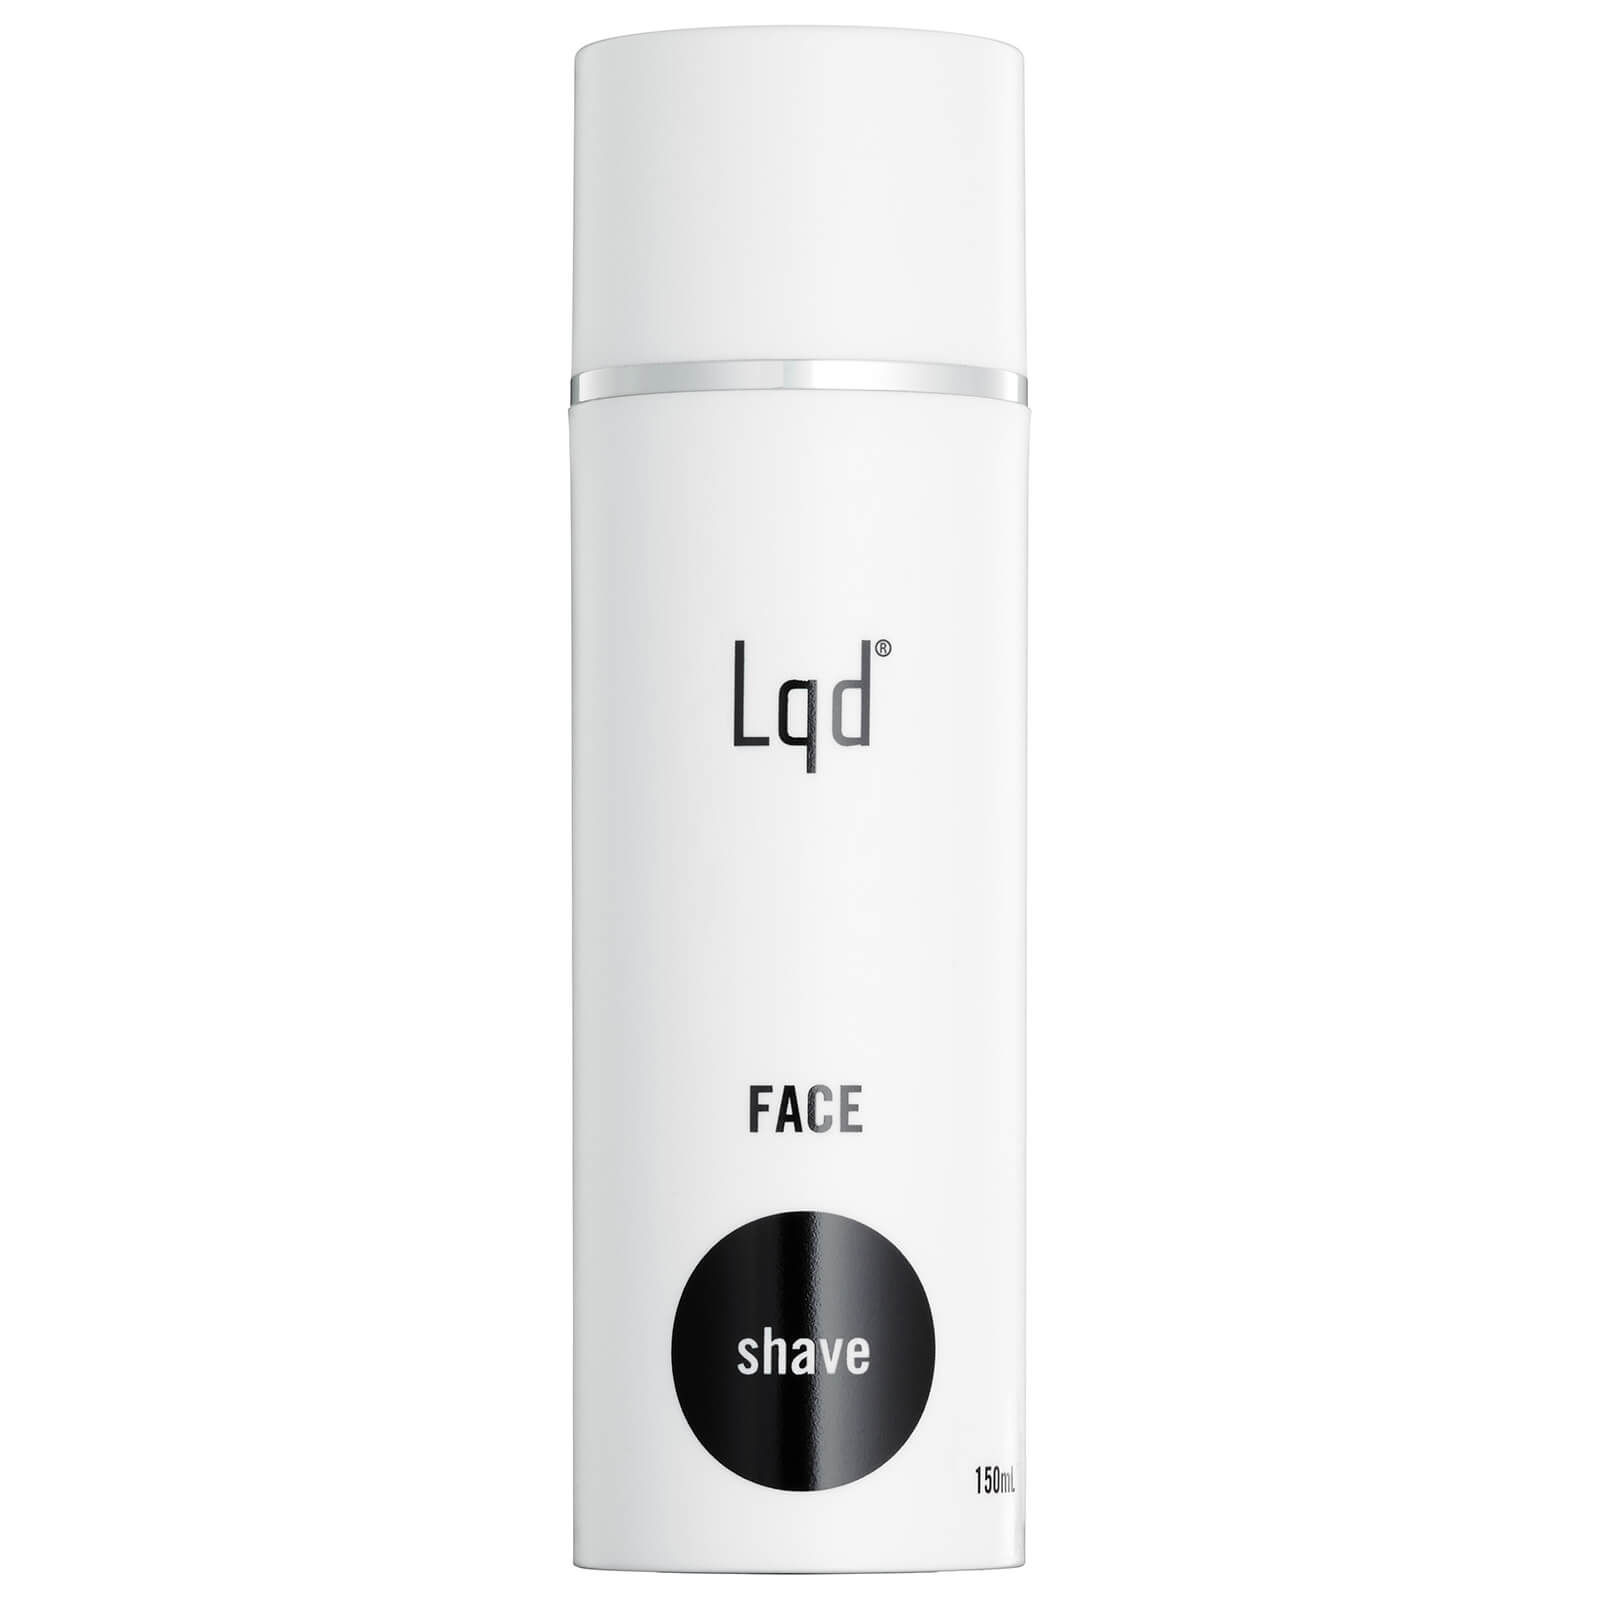 Crema de afeitar facial de Lqd Skin Care 150 ml